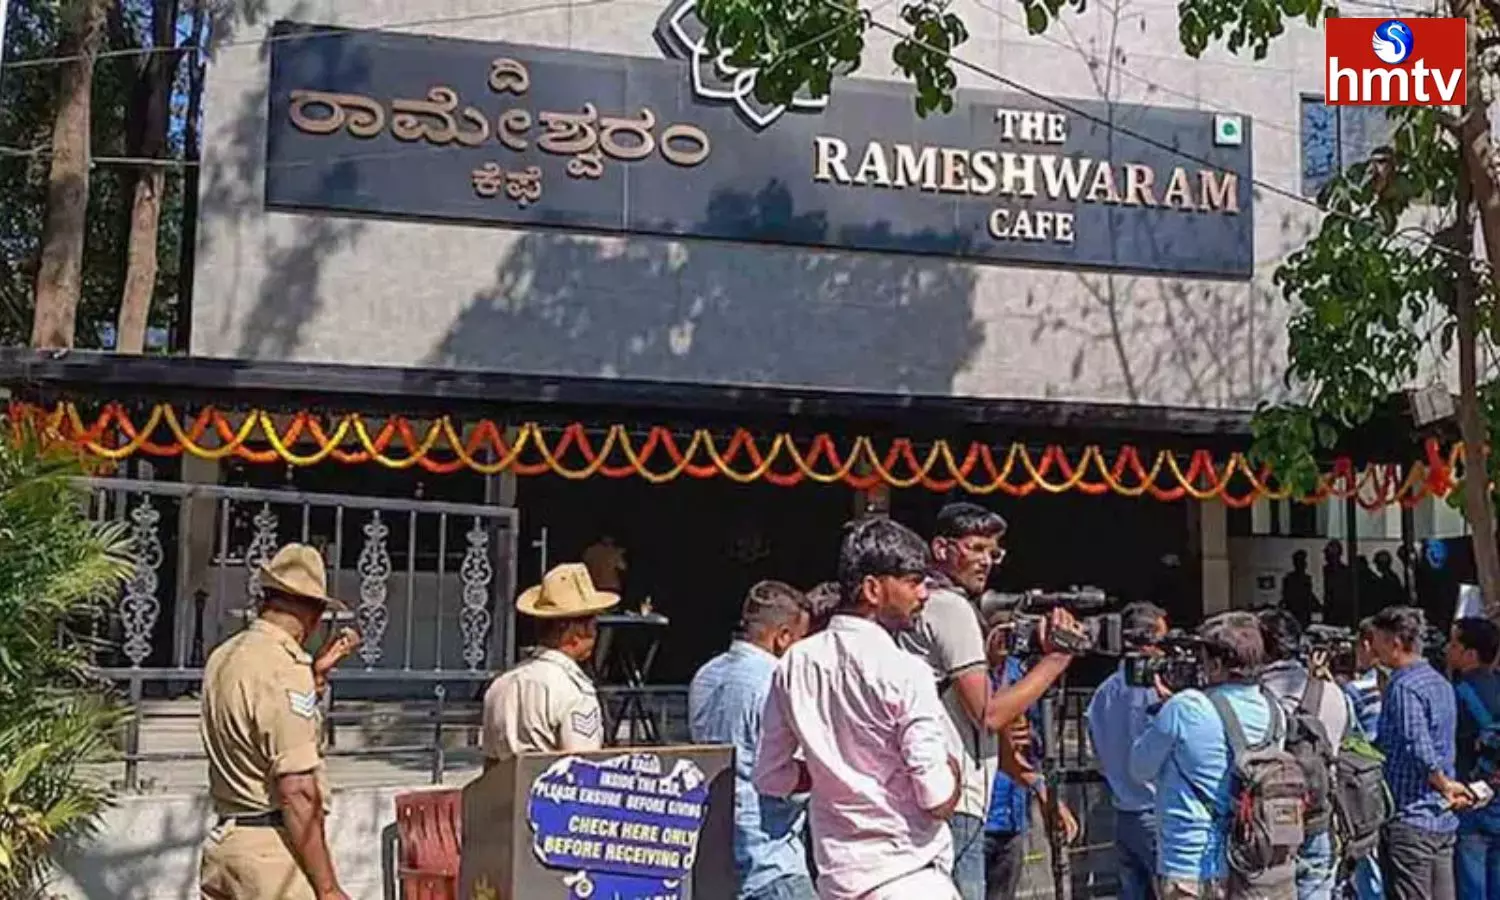 Rameshwaram Cafe Bomb Blast Case Updates